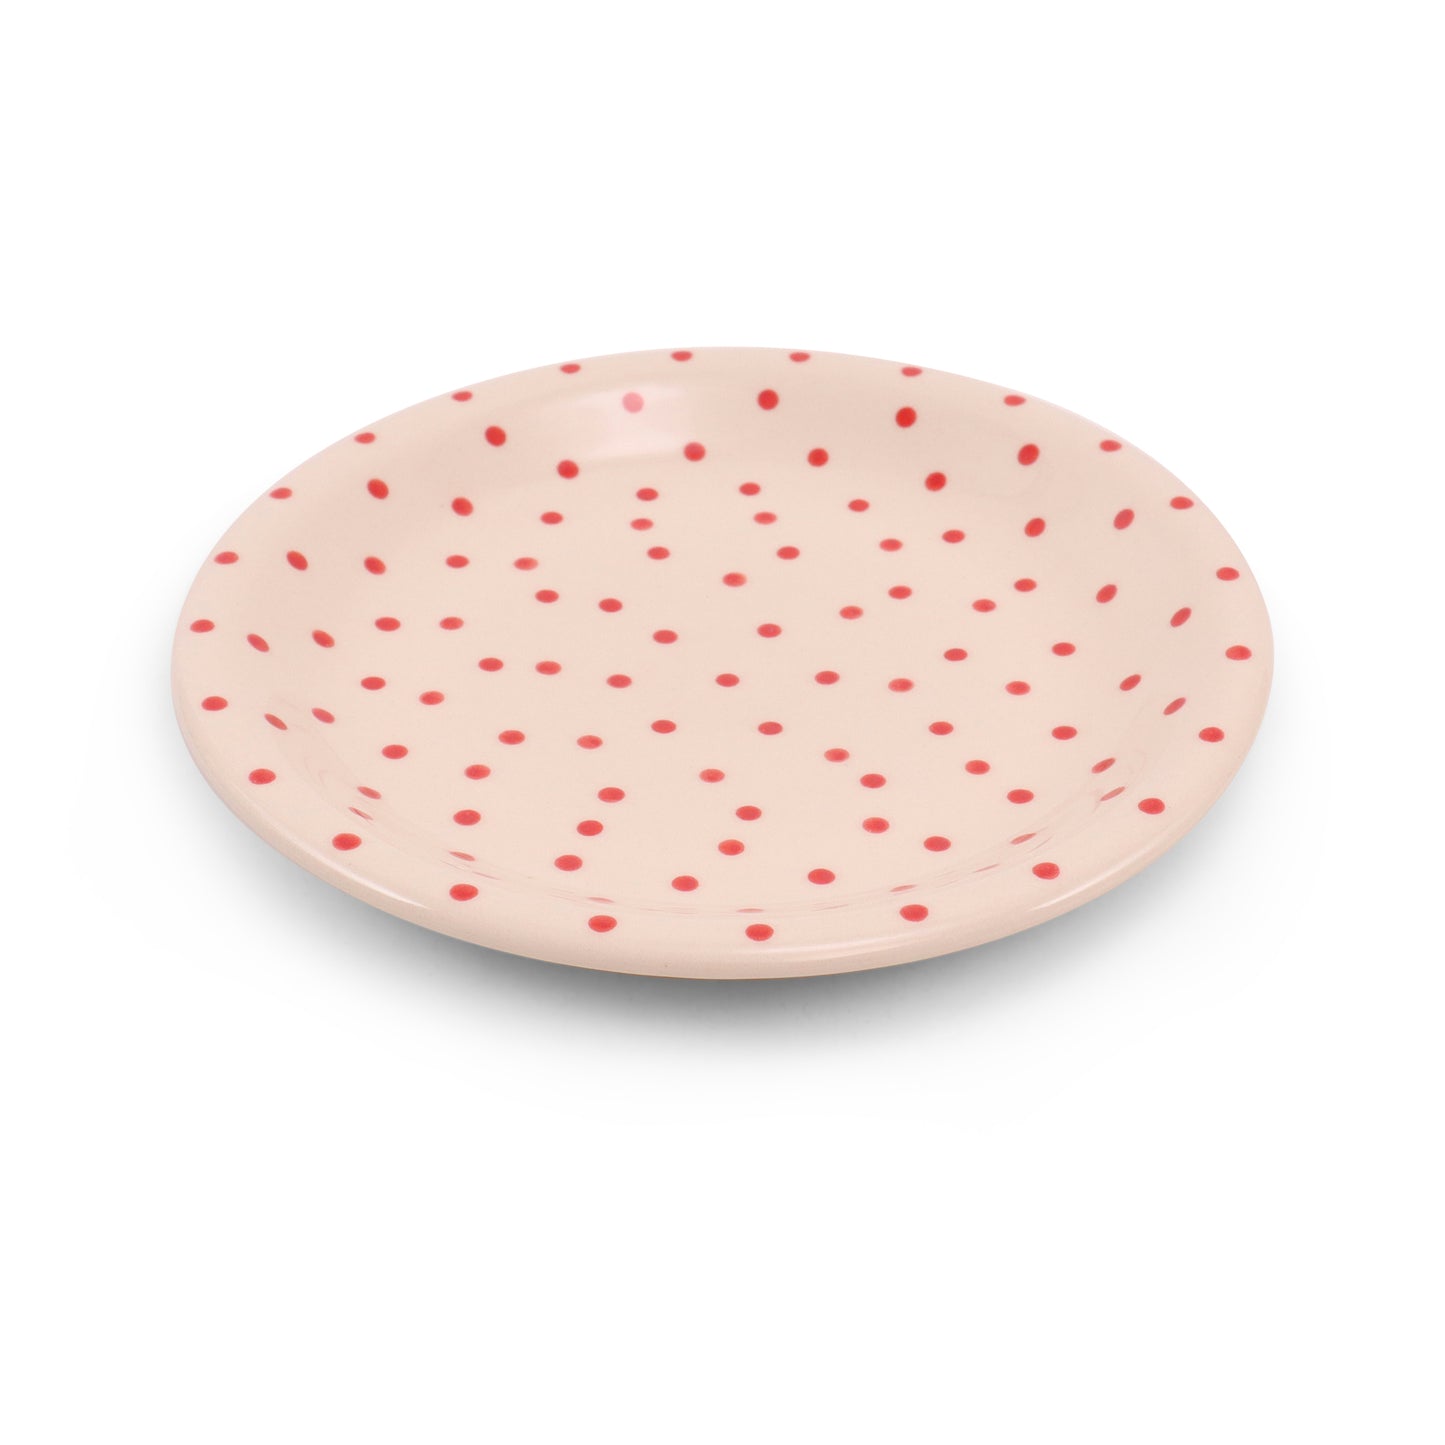 10" Dinner Plate. Pattern: Red Polka Dot